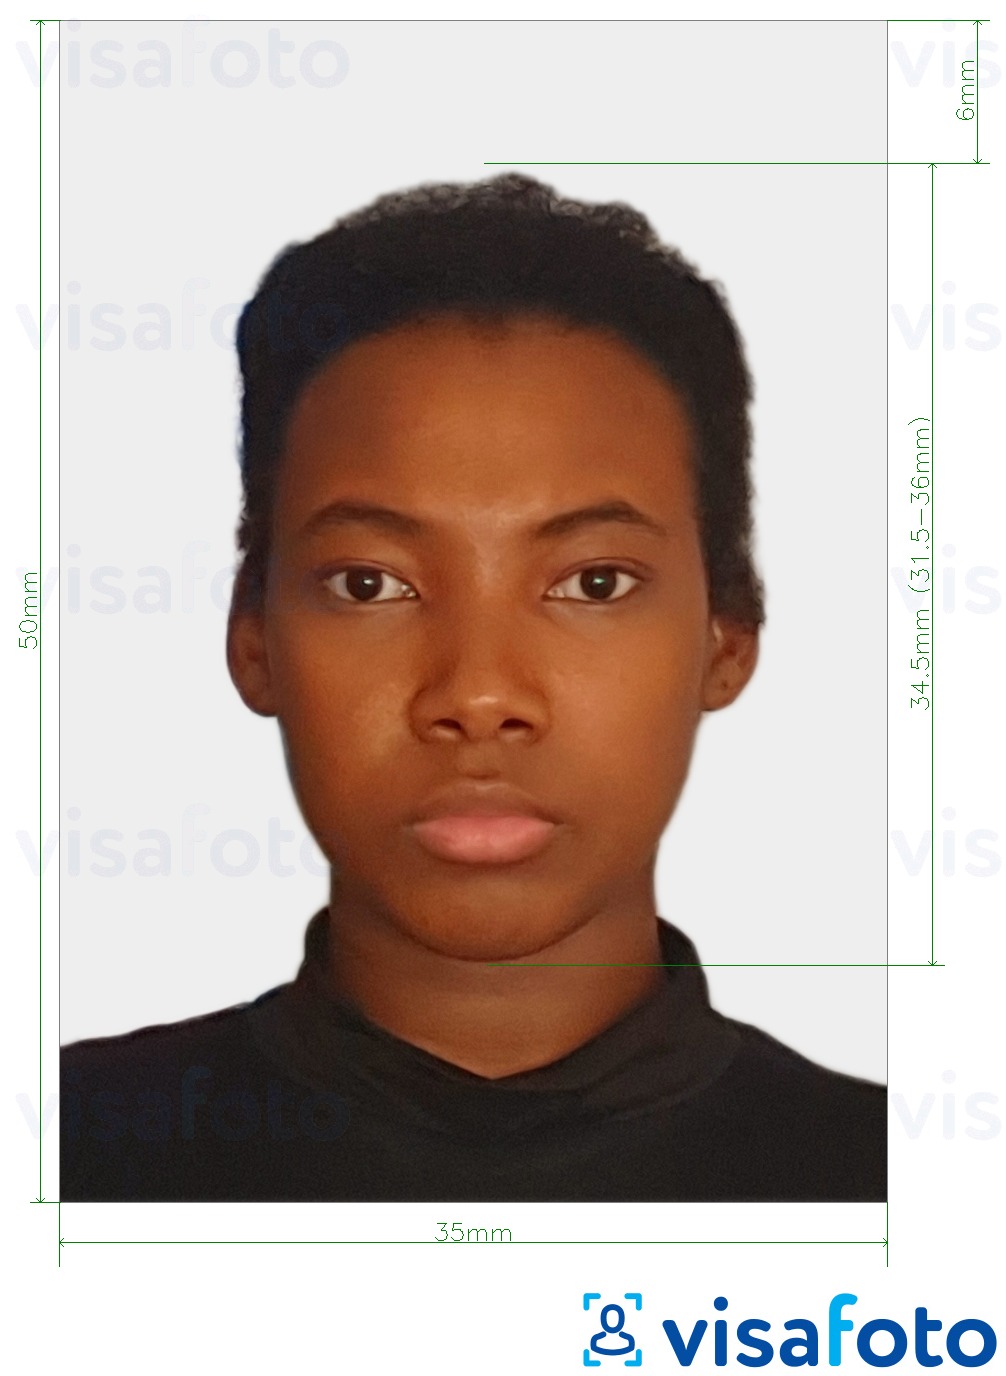 Contoh foto untuk Suriname pasport 50x35 mm dengan spesifikasi saiz yang tepat.